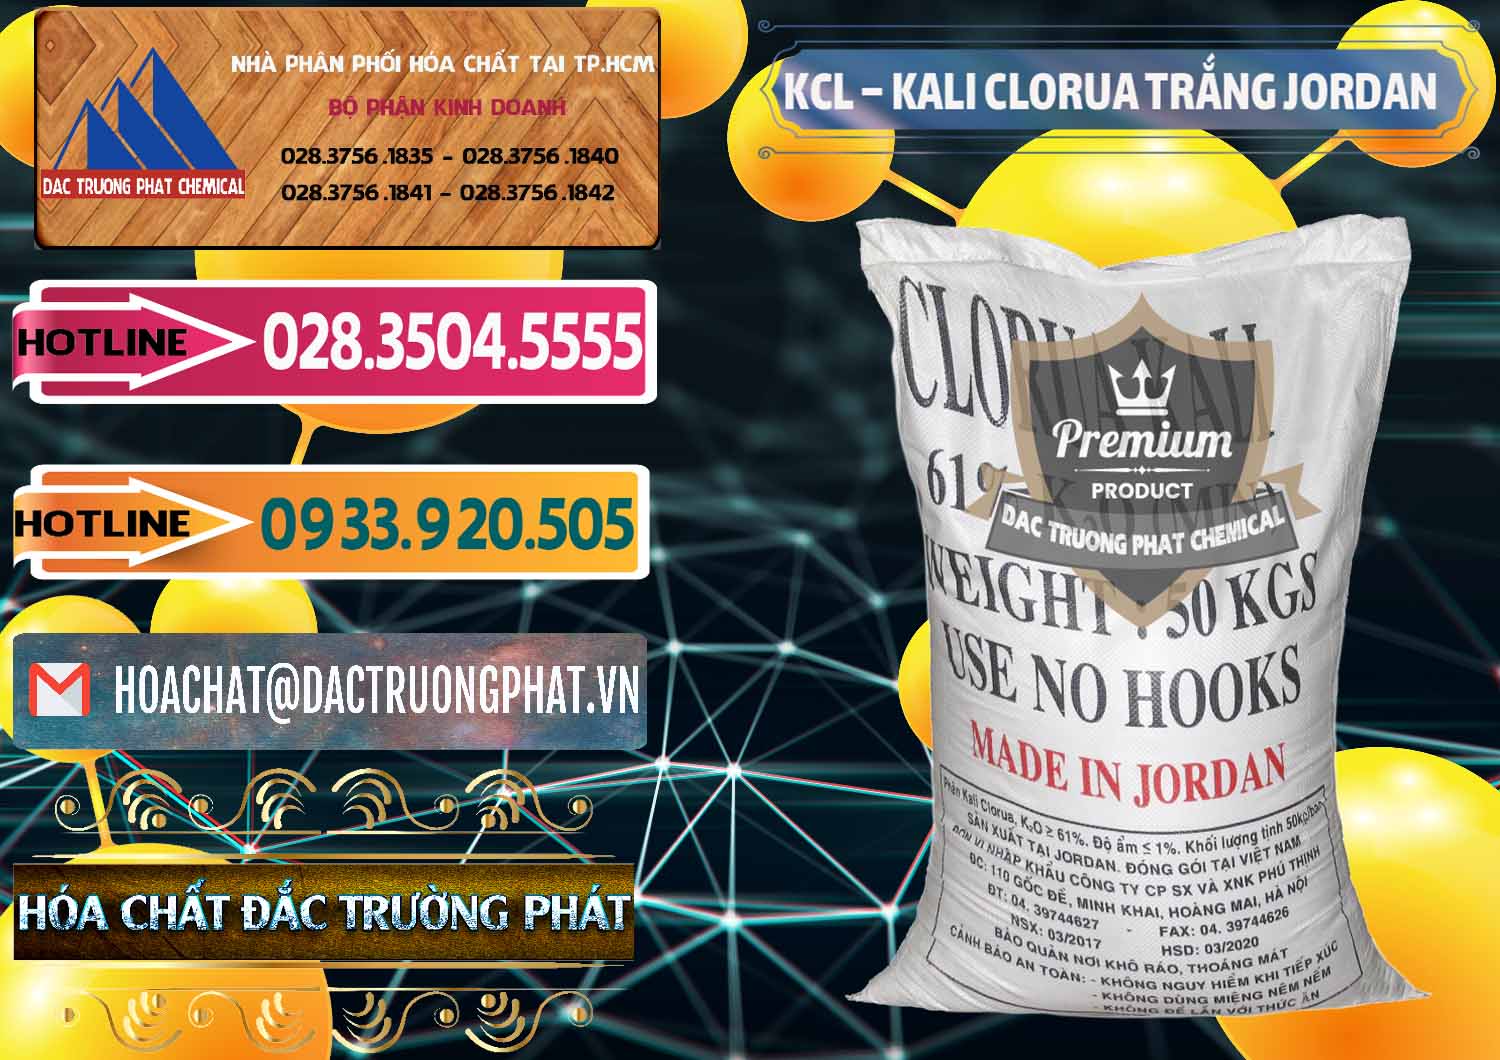 Cty chuyên phân phối - bán KCL – Kali Clorua Trắng Jordan - 0088 - Nơi chuyên cung cấp - kinh doanh hóa chất tại TP.HCM - dactruongphat.vn